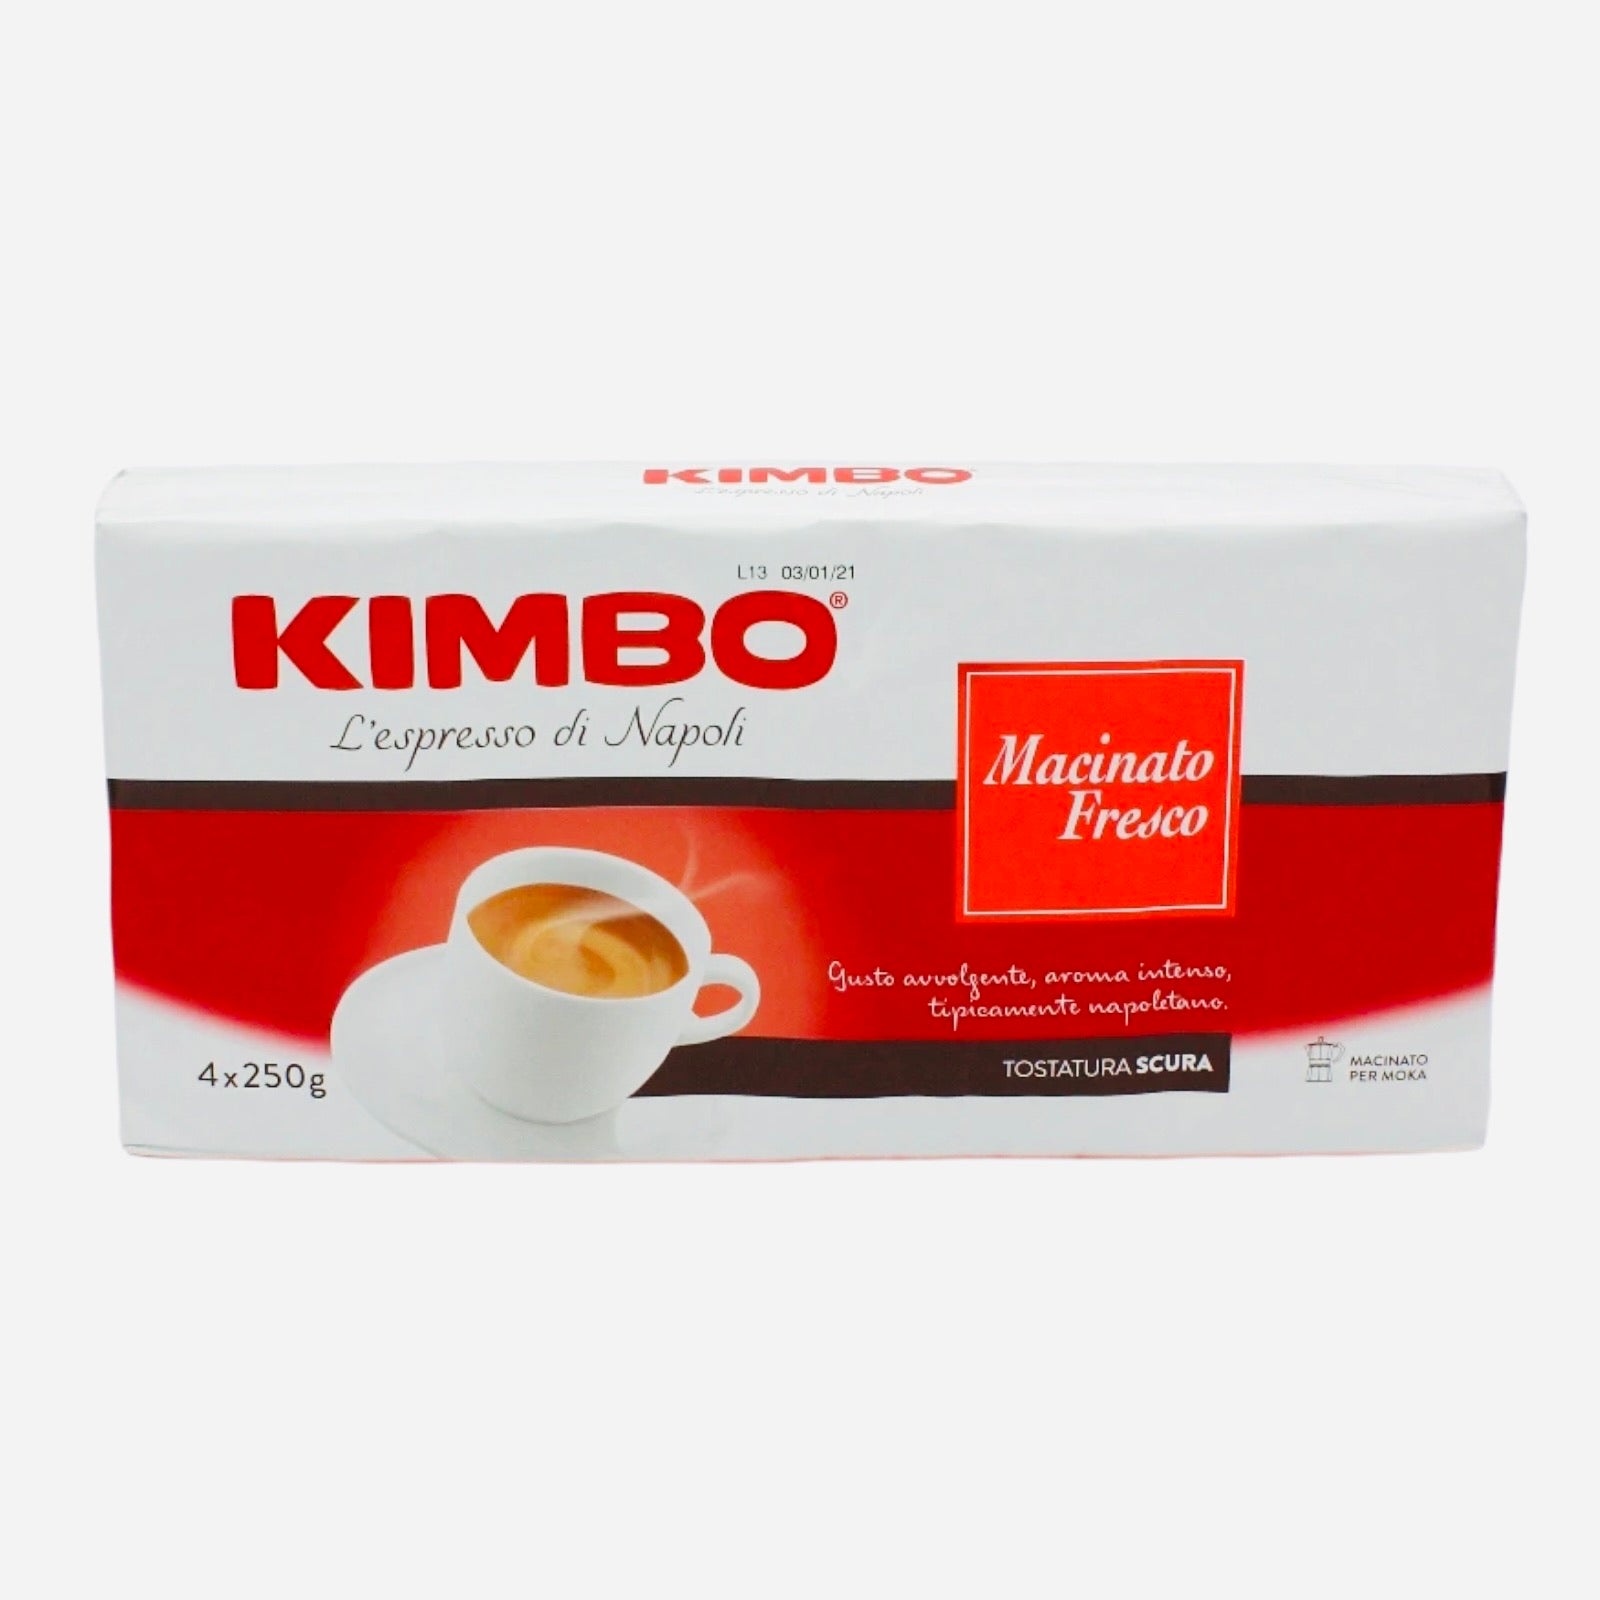 Kimbo Macinato Fresco 4 PACKS